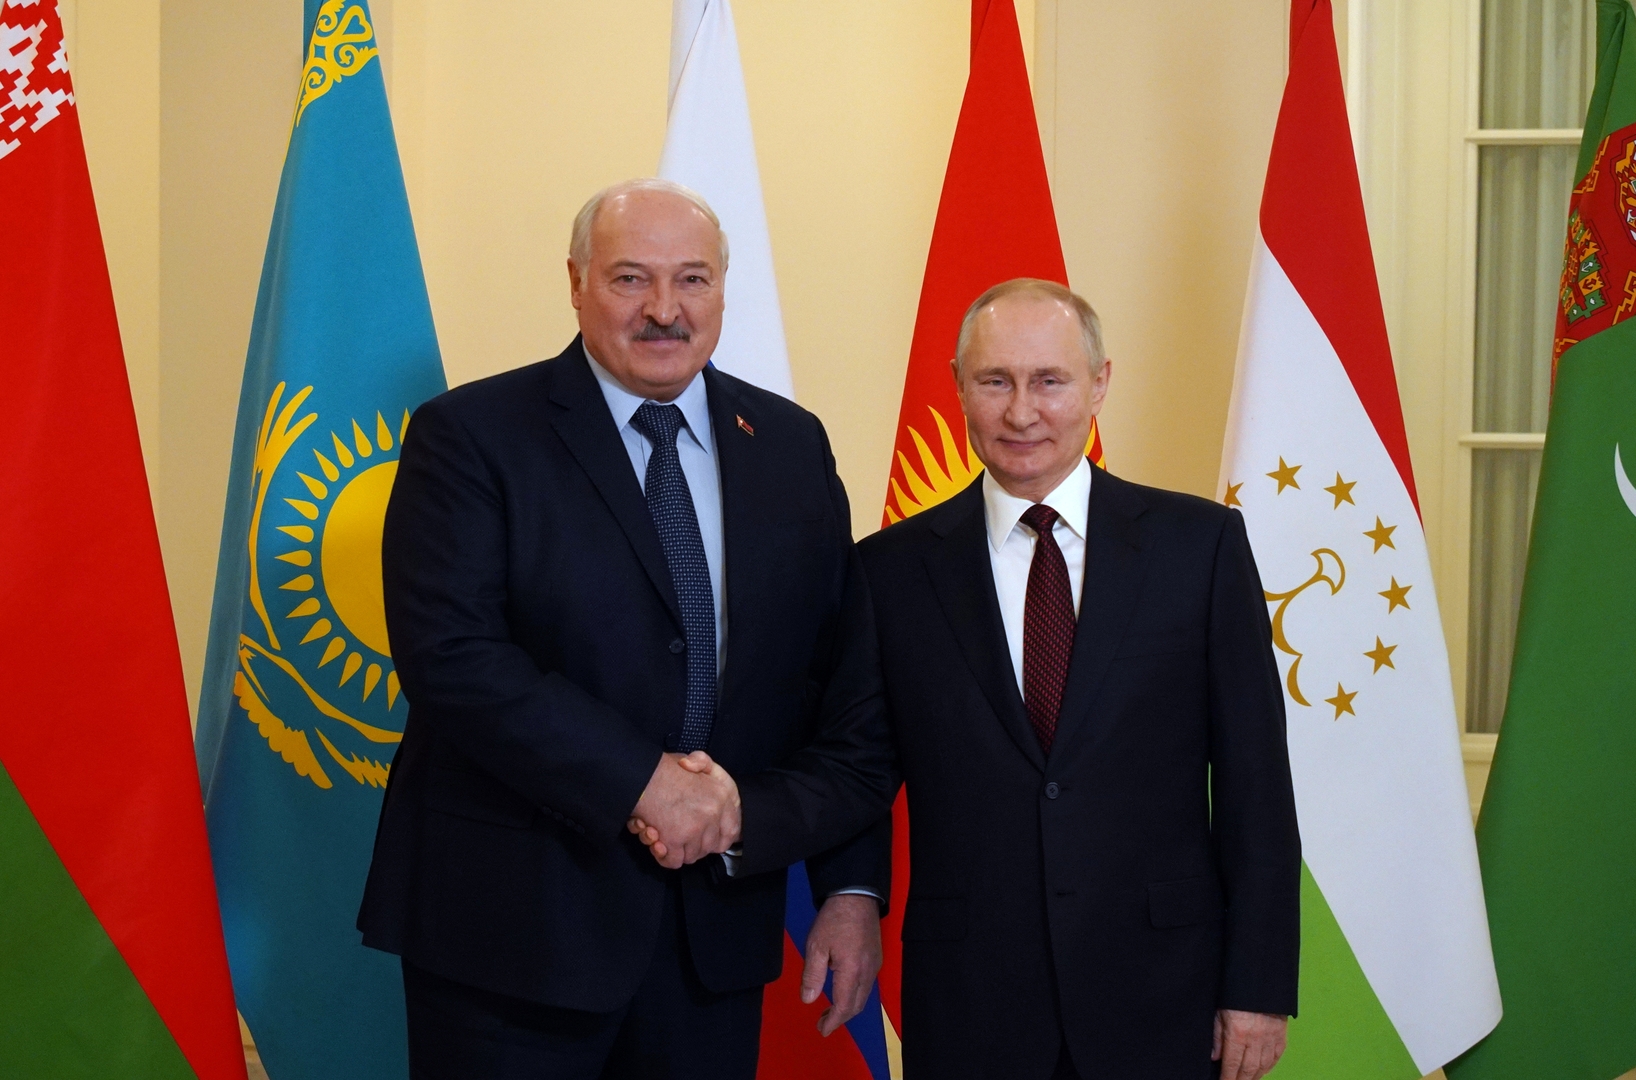 صورة من الأرشيف - الرئيسان الروسي والبيلاروسي